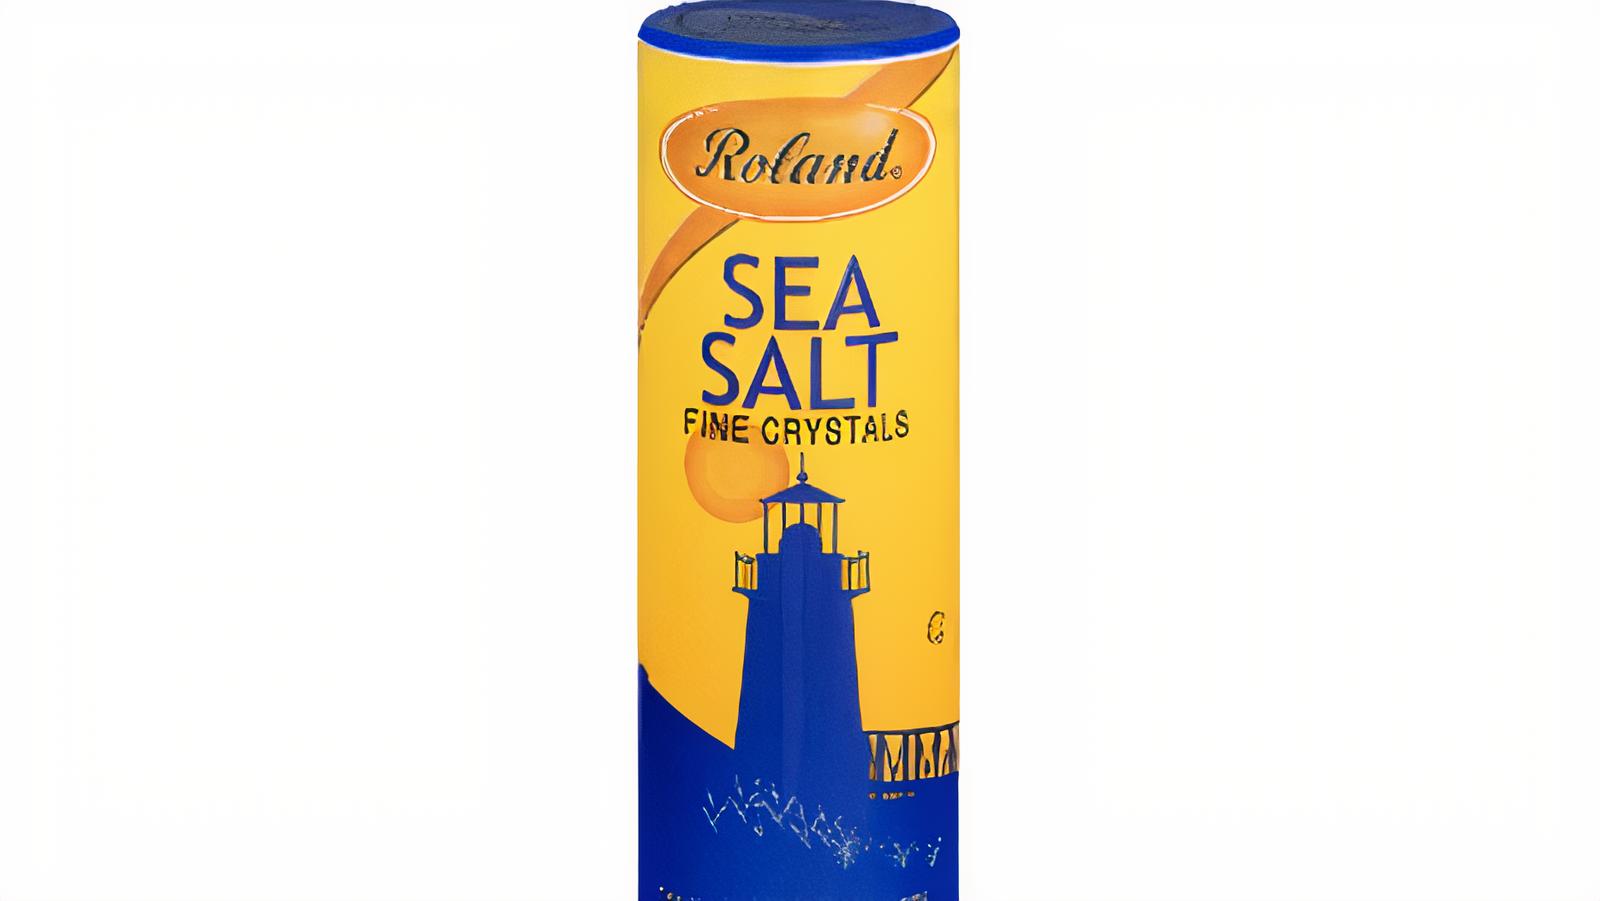 Roland Sea Salt,26.40z